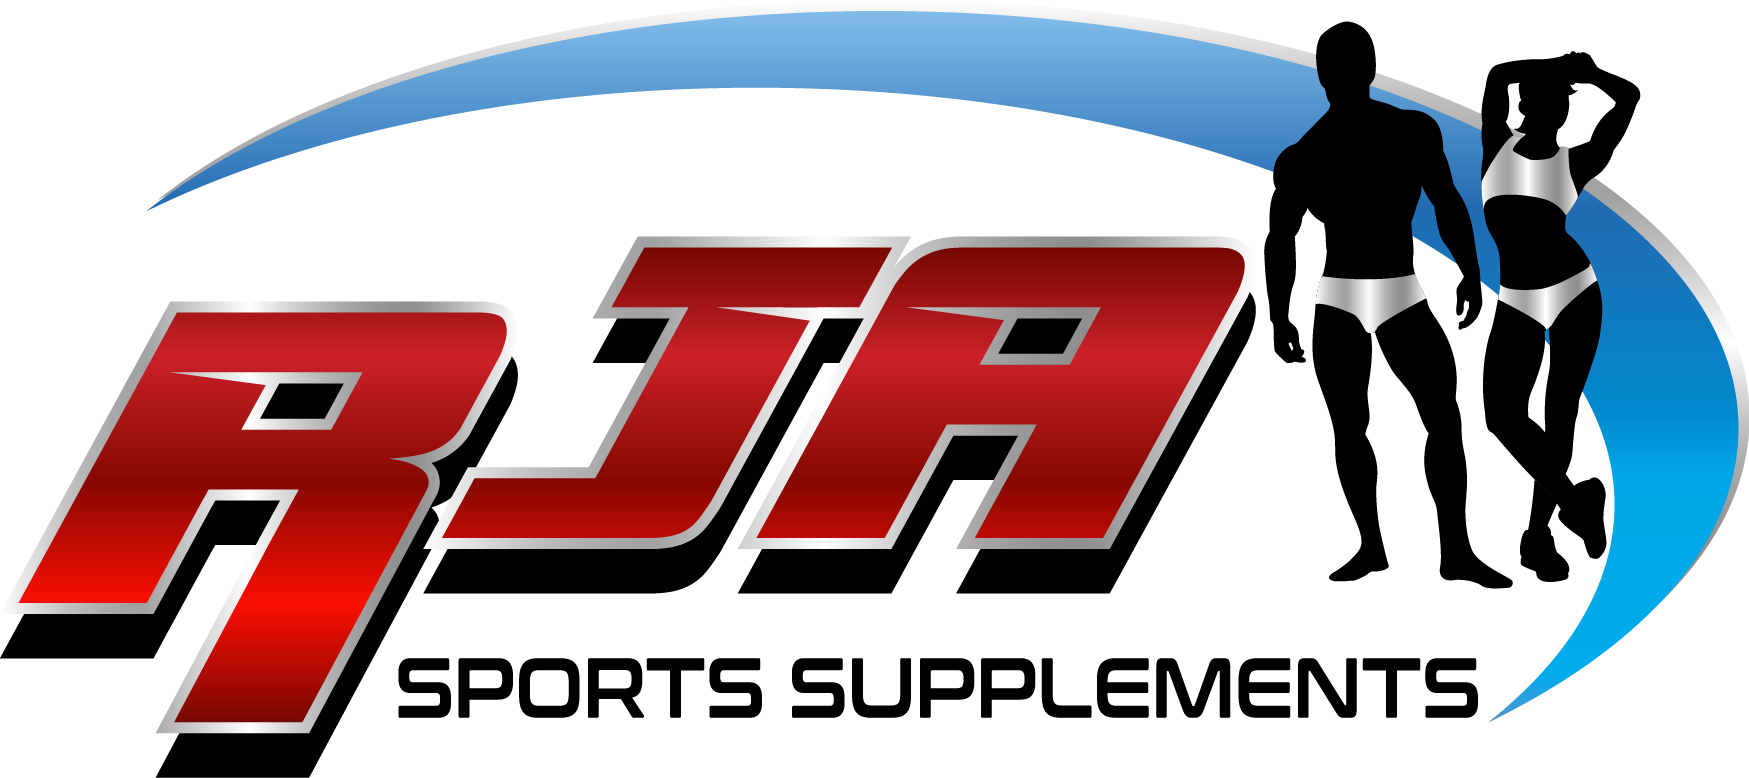 Logo_RJASS_Tienda_suplementos